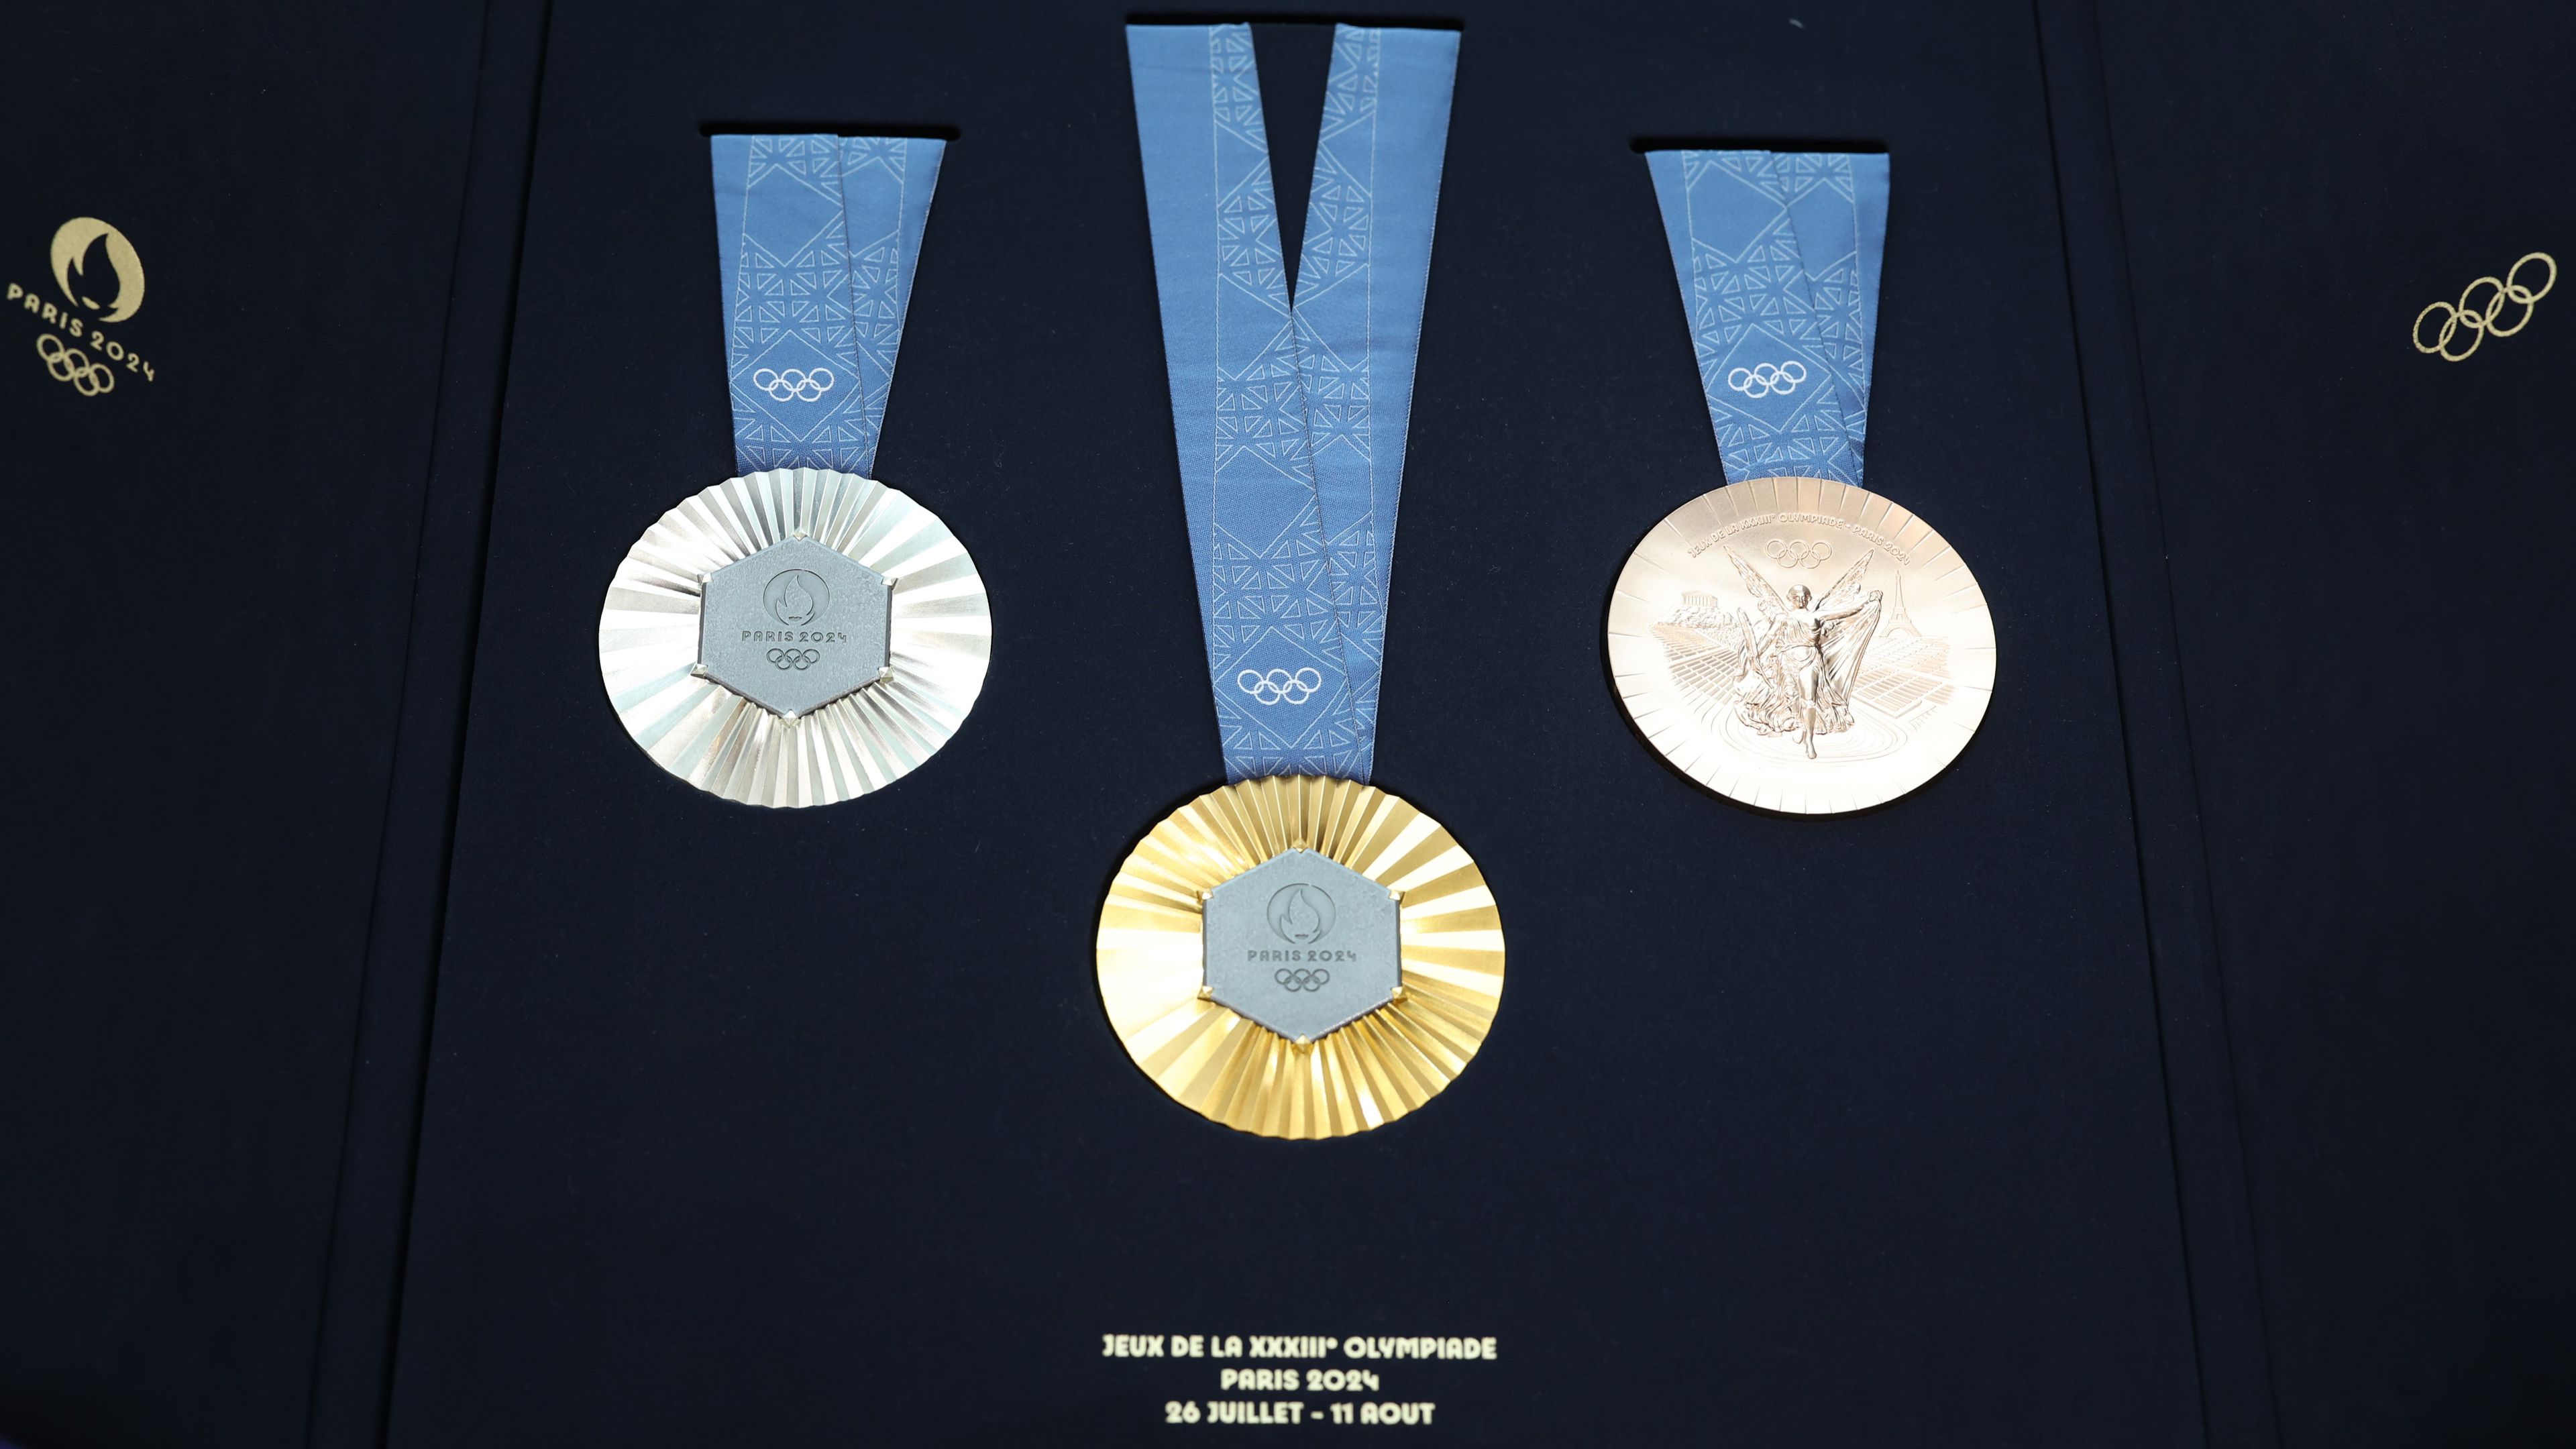 Az adatelemző amerikai cég összesen 18 érmet vár Magyarországtól a párizsi olimpián, a 3 arany mellett 9 ezüstöt és 6 bronzot, amivel a rangsorban a 14. helyen végeznénk a világon/Getty